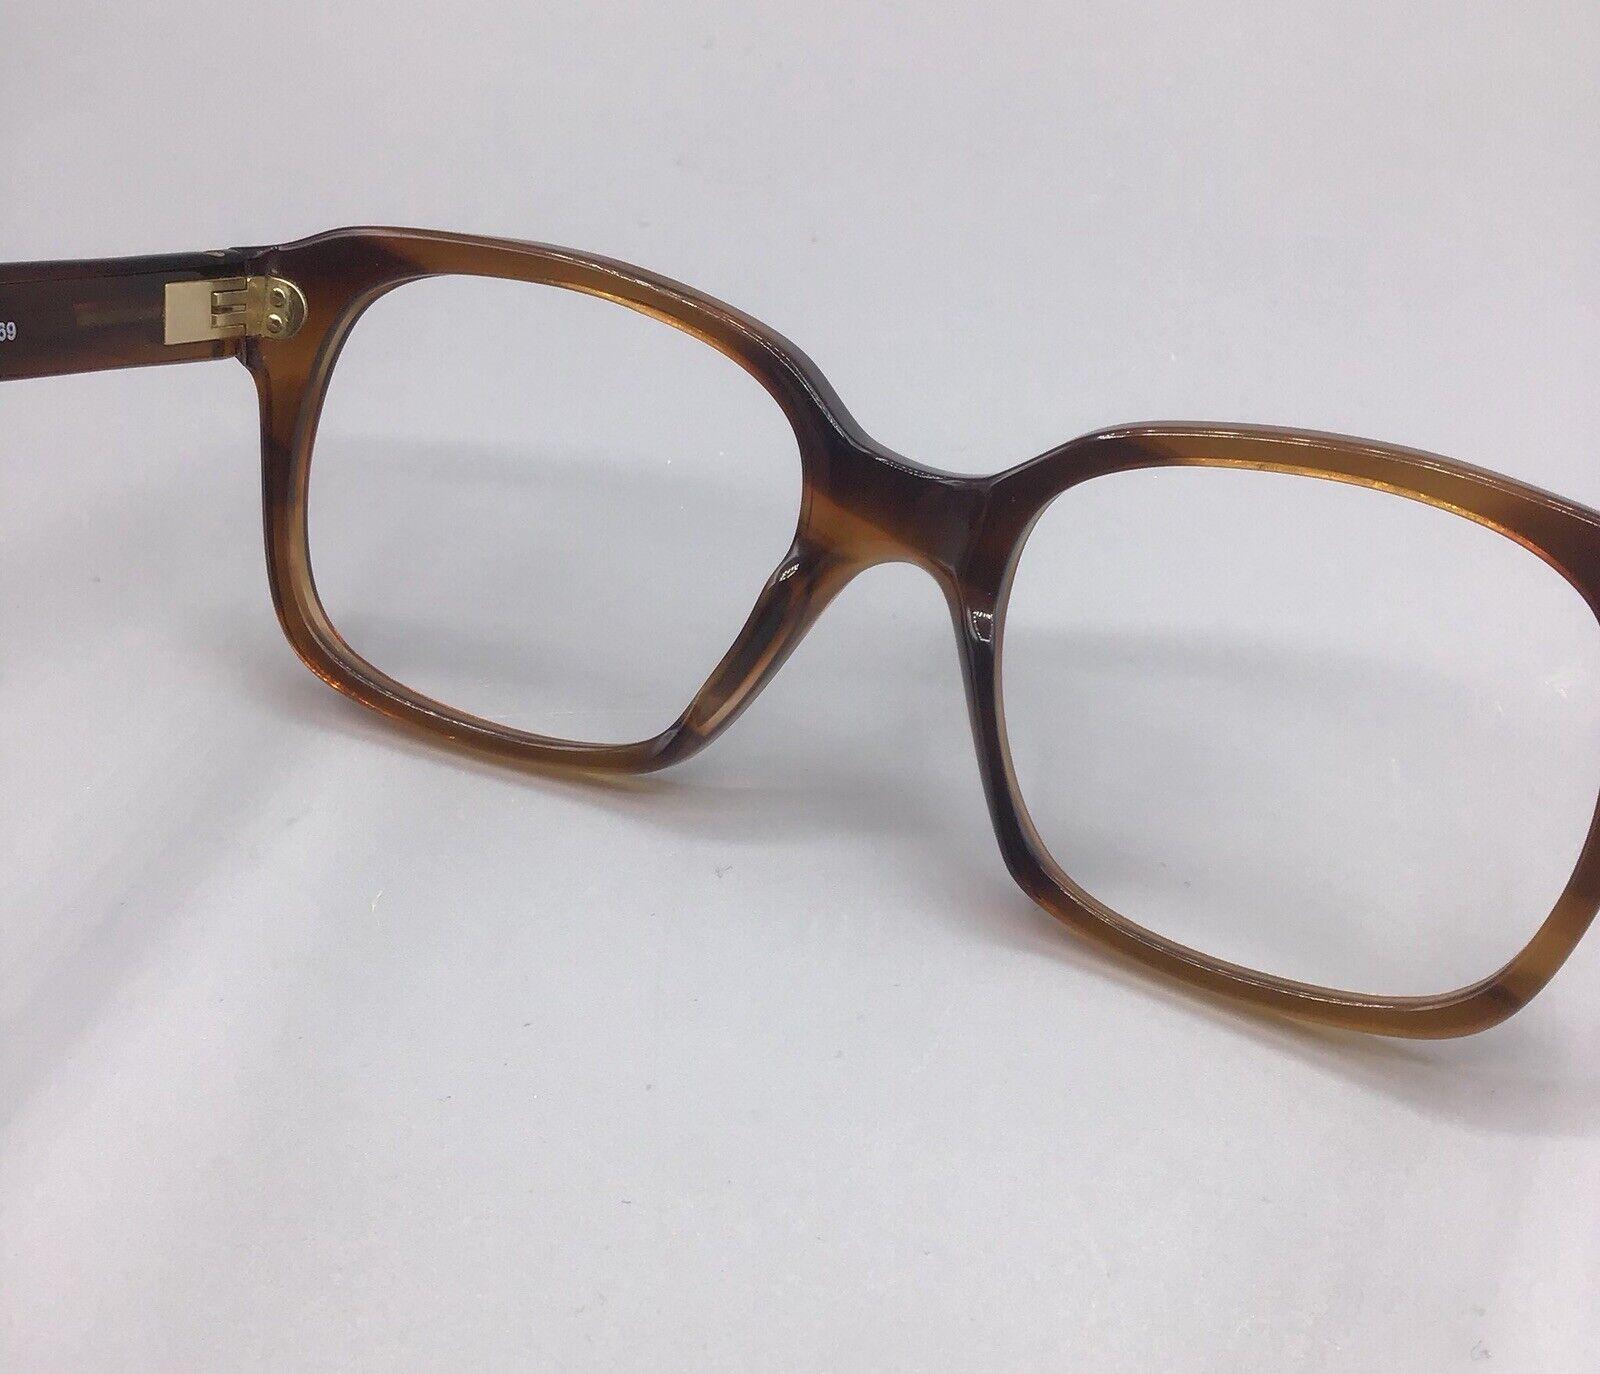 Sferoflex pat 335 frame italy 169 occhiale vintage eyewear brillen lunettes